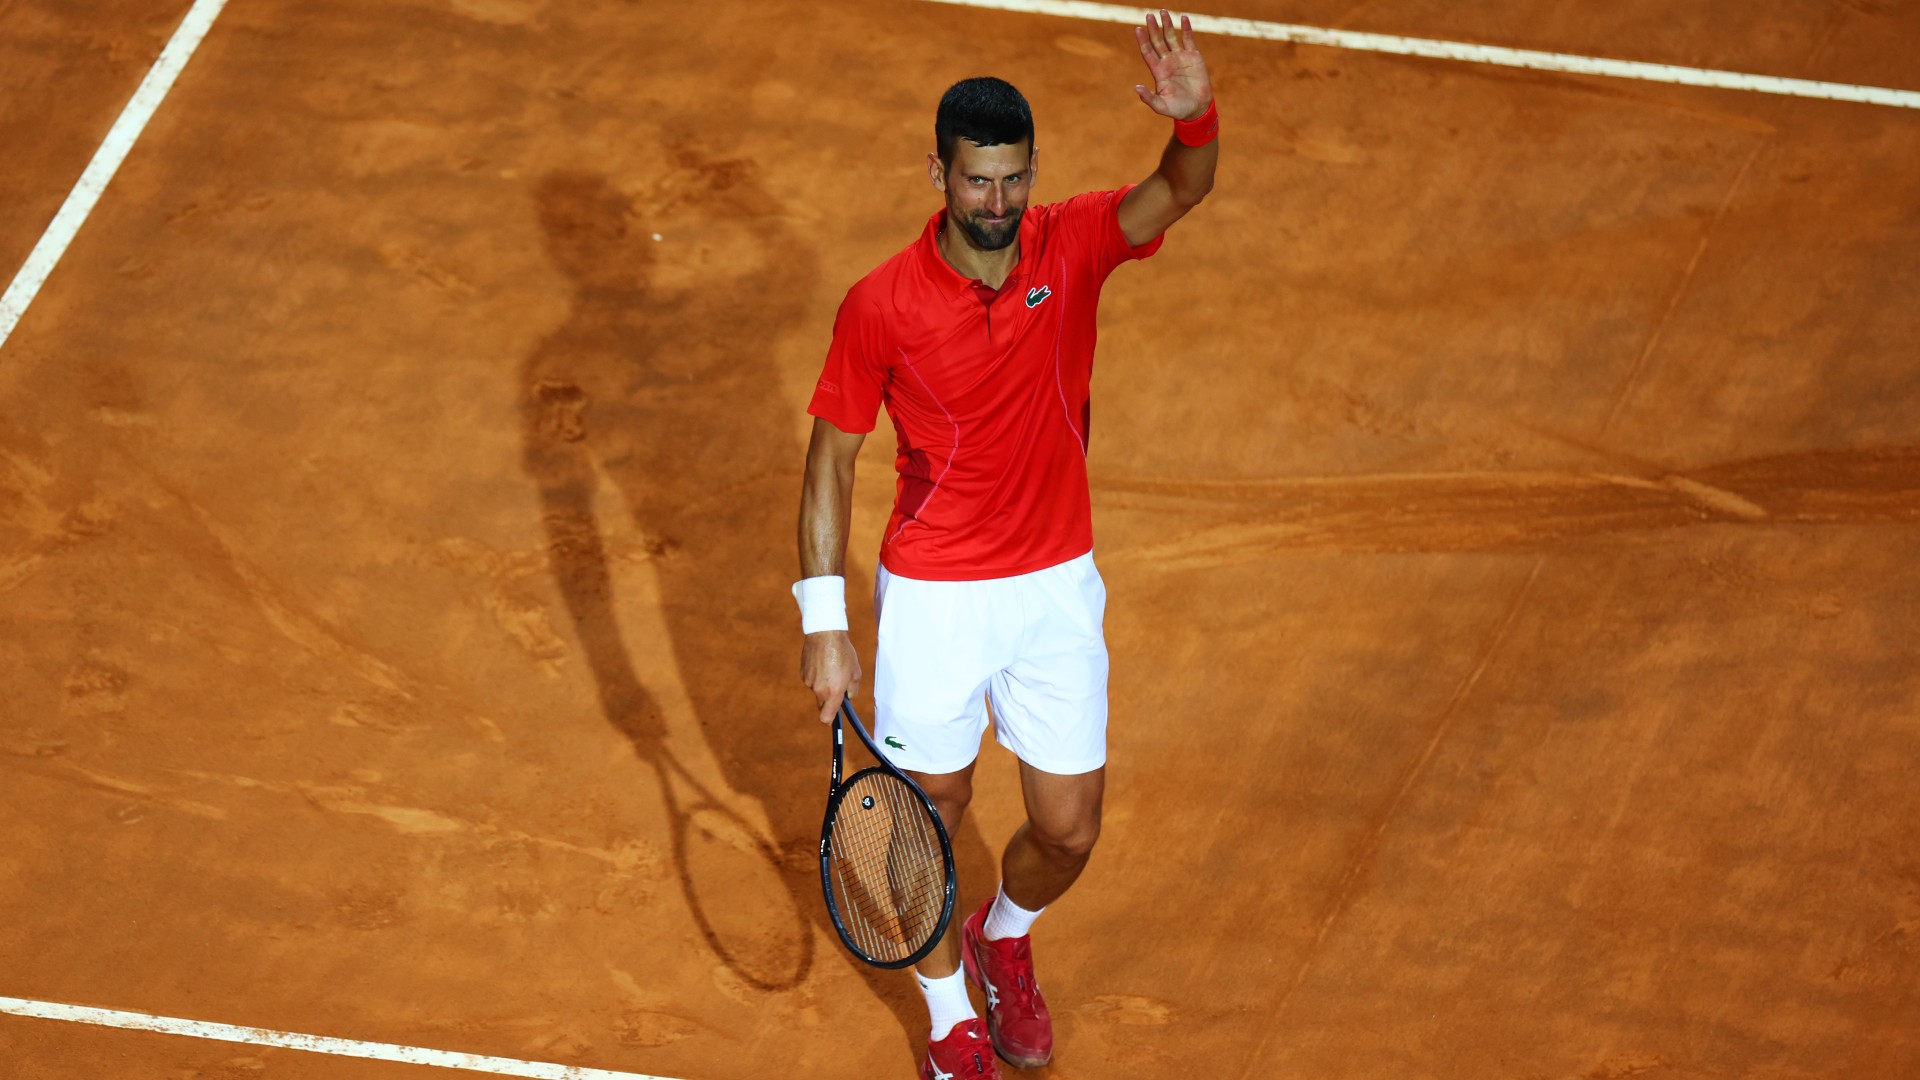 Djokovic 'fine' after hit by bottle